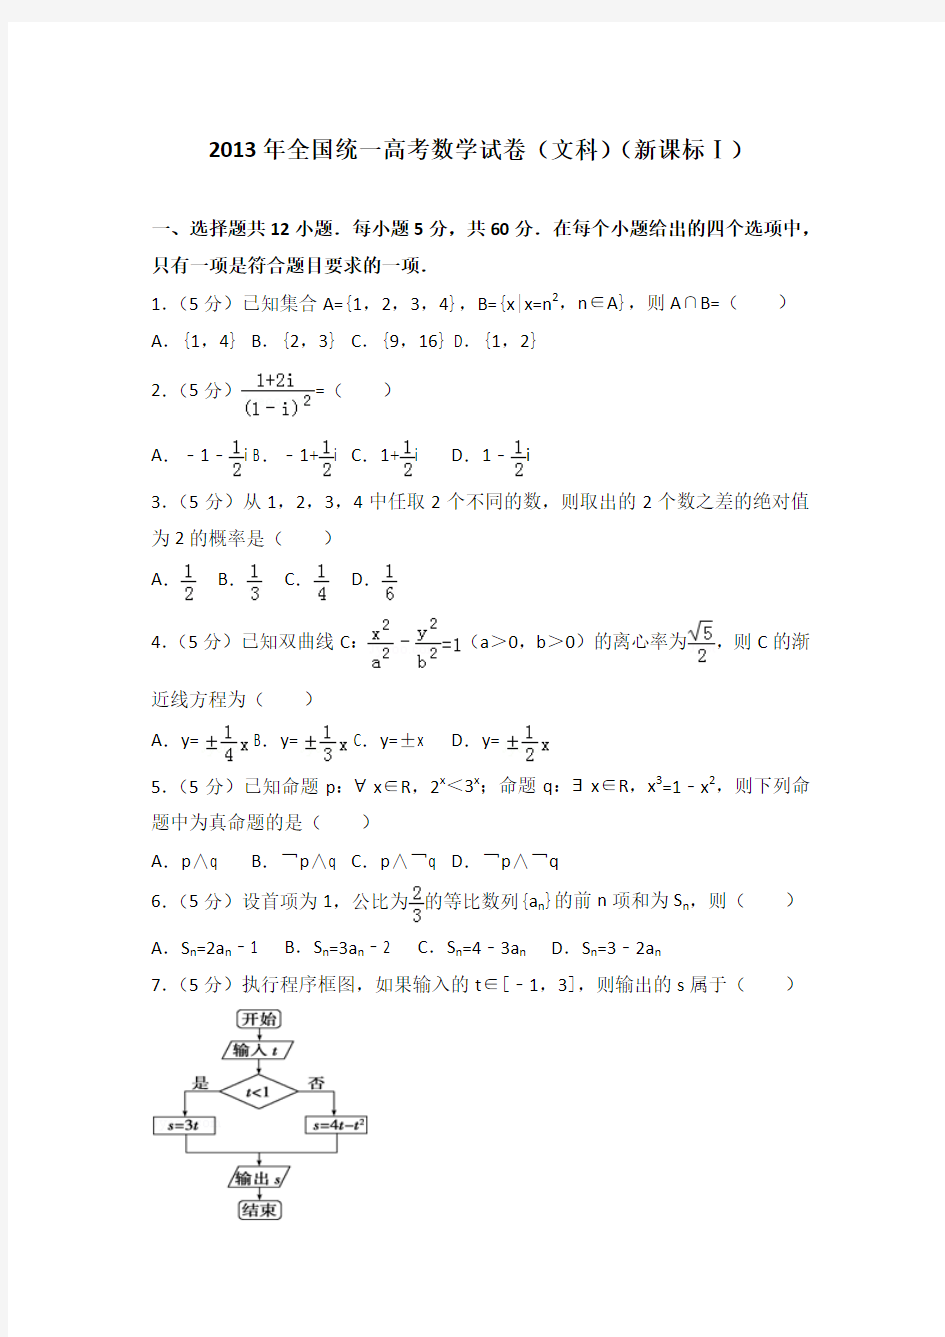 2013年全国统一高考数学试卷(文科)(新课标一)及答案